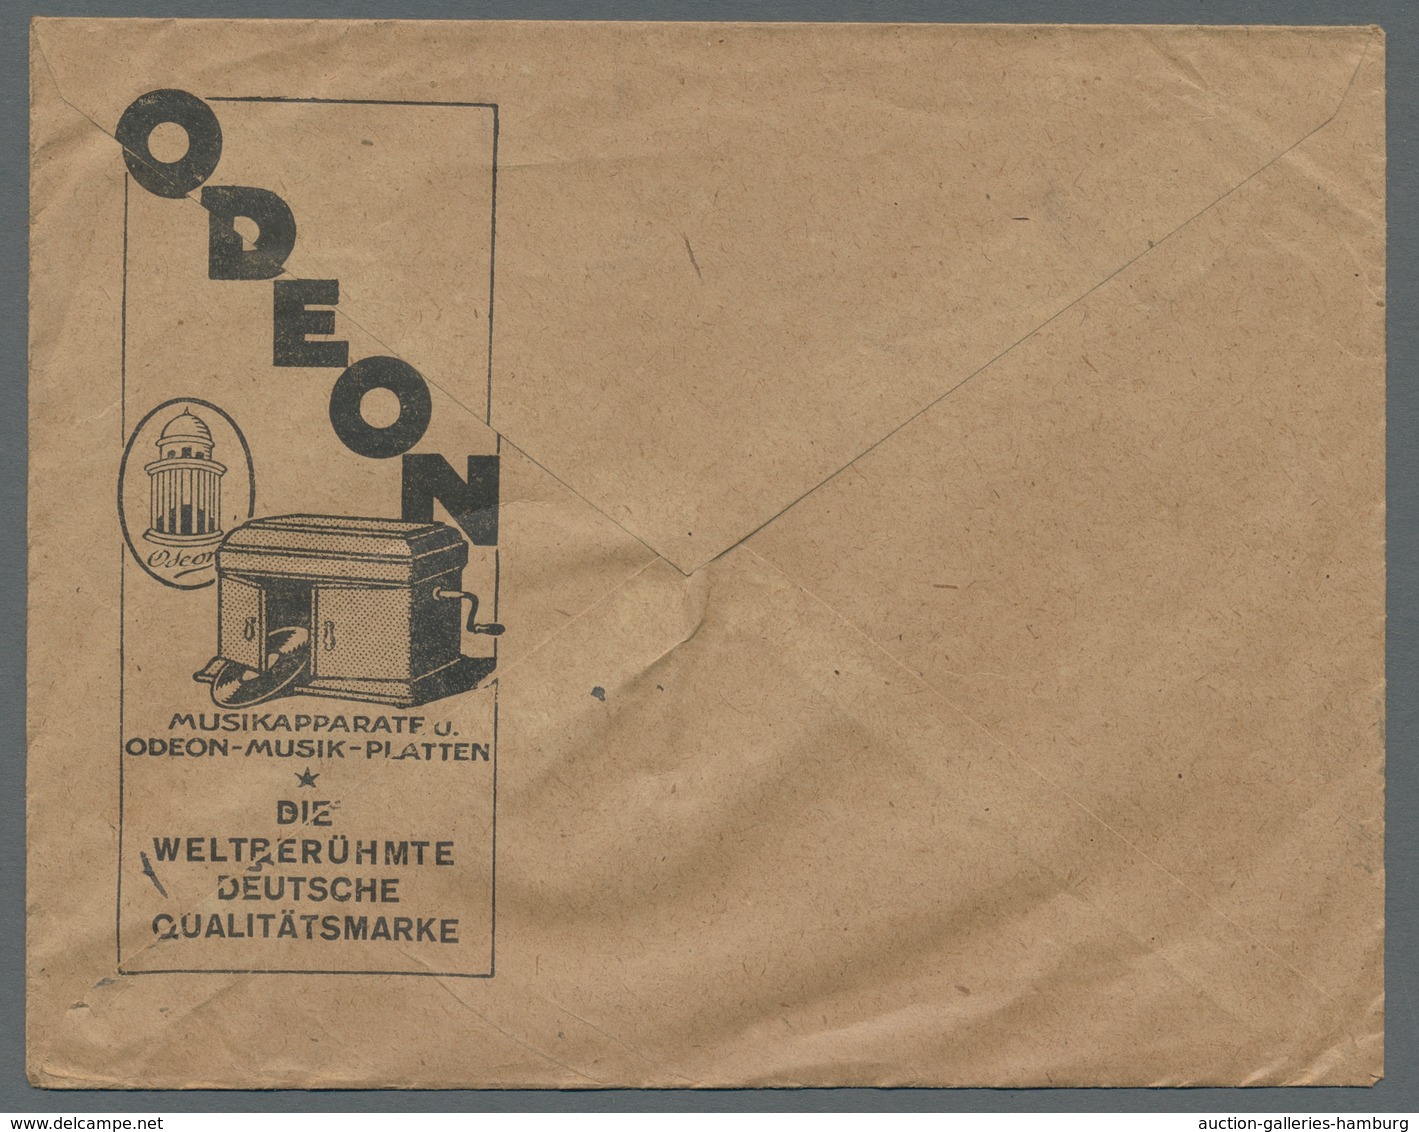 Deutsches Reich: 1889-1944, Partie von etwa 420 Belegen in 7 Alben mit u.a. Ansichtskarten mit teils